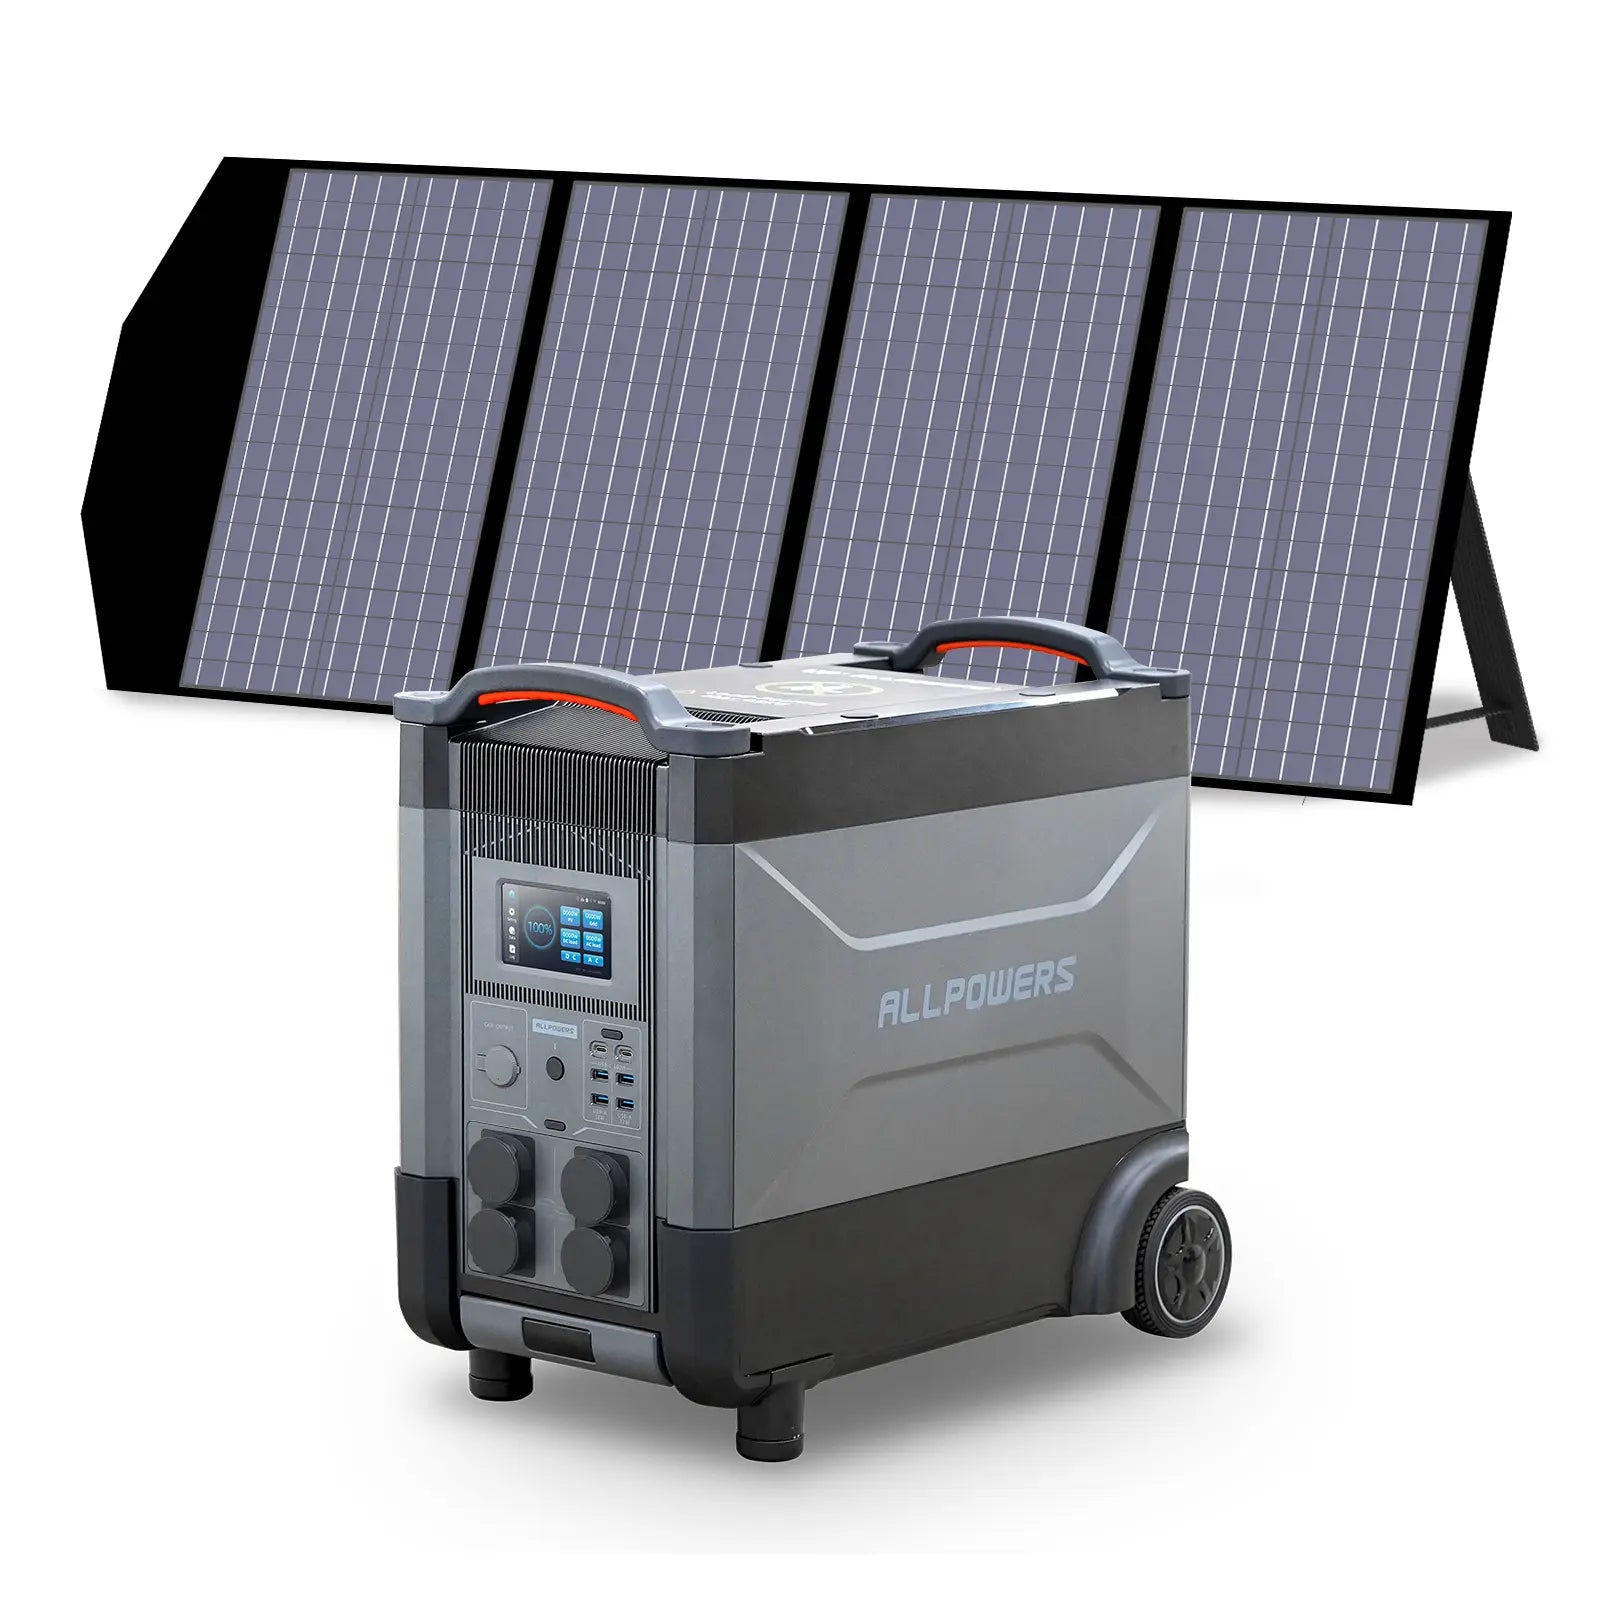 ALLPOWERS 4000W Generatore Solare (R4000 + SP029 140W Pannello Solare)